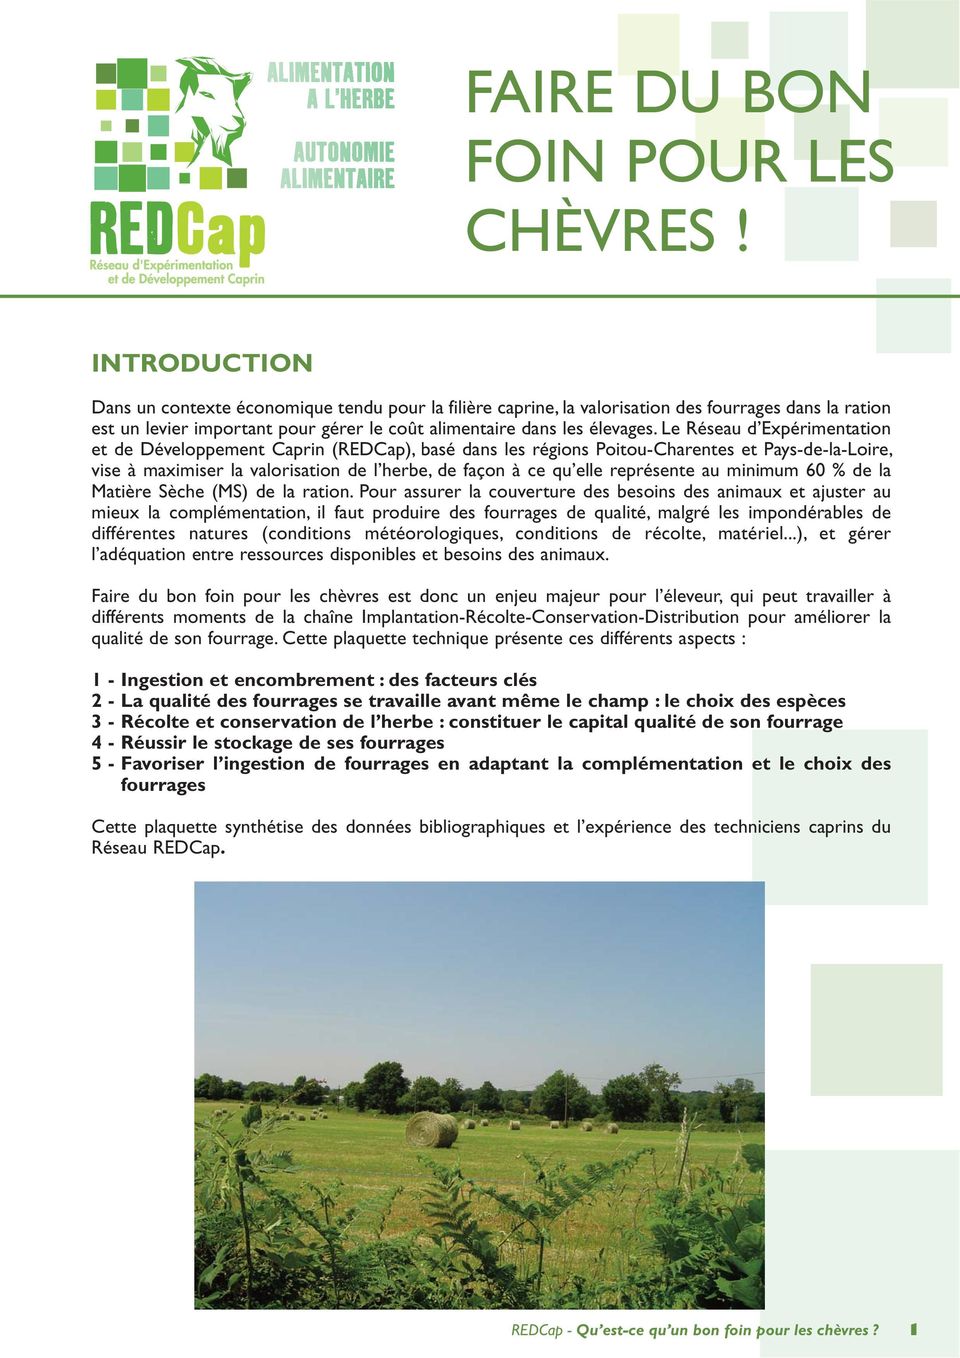 Le Réseau d Expérimentation et de Développement Caprin (REDCap), basé dans les régions Poitou-Charentes et Pays-de-la-Loire, vise à maximiser la valorisation de l herbe, de façon à ce qu elle